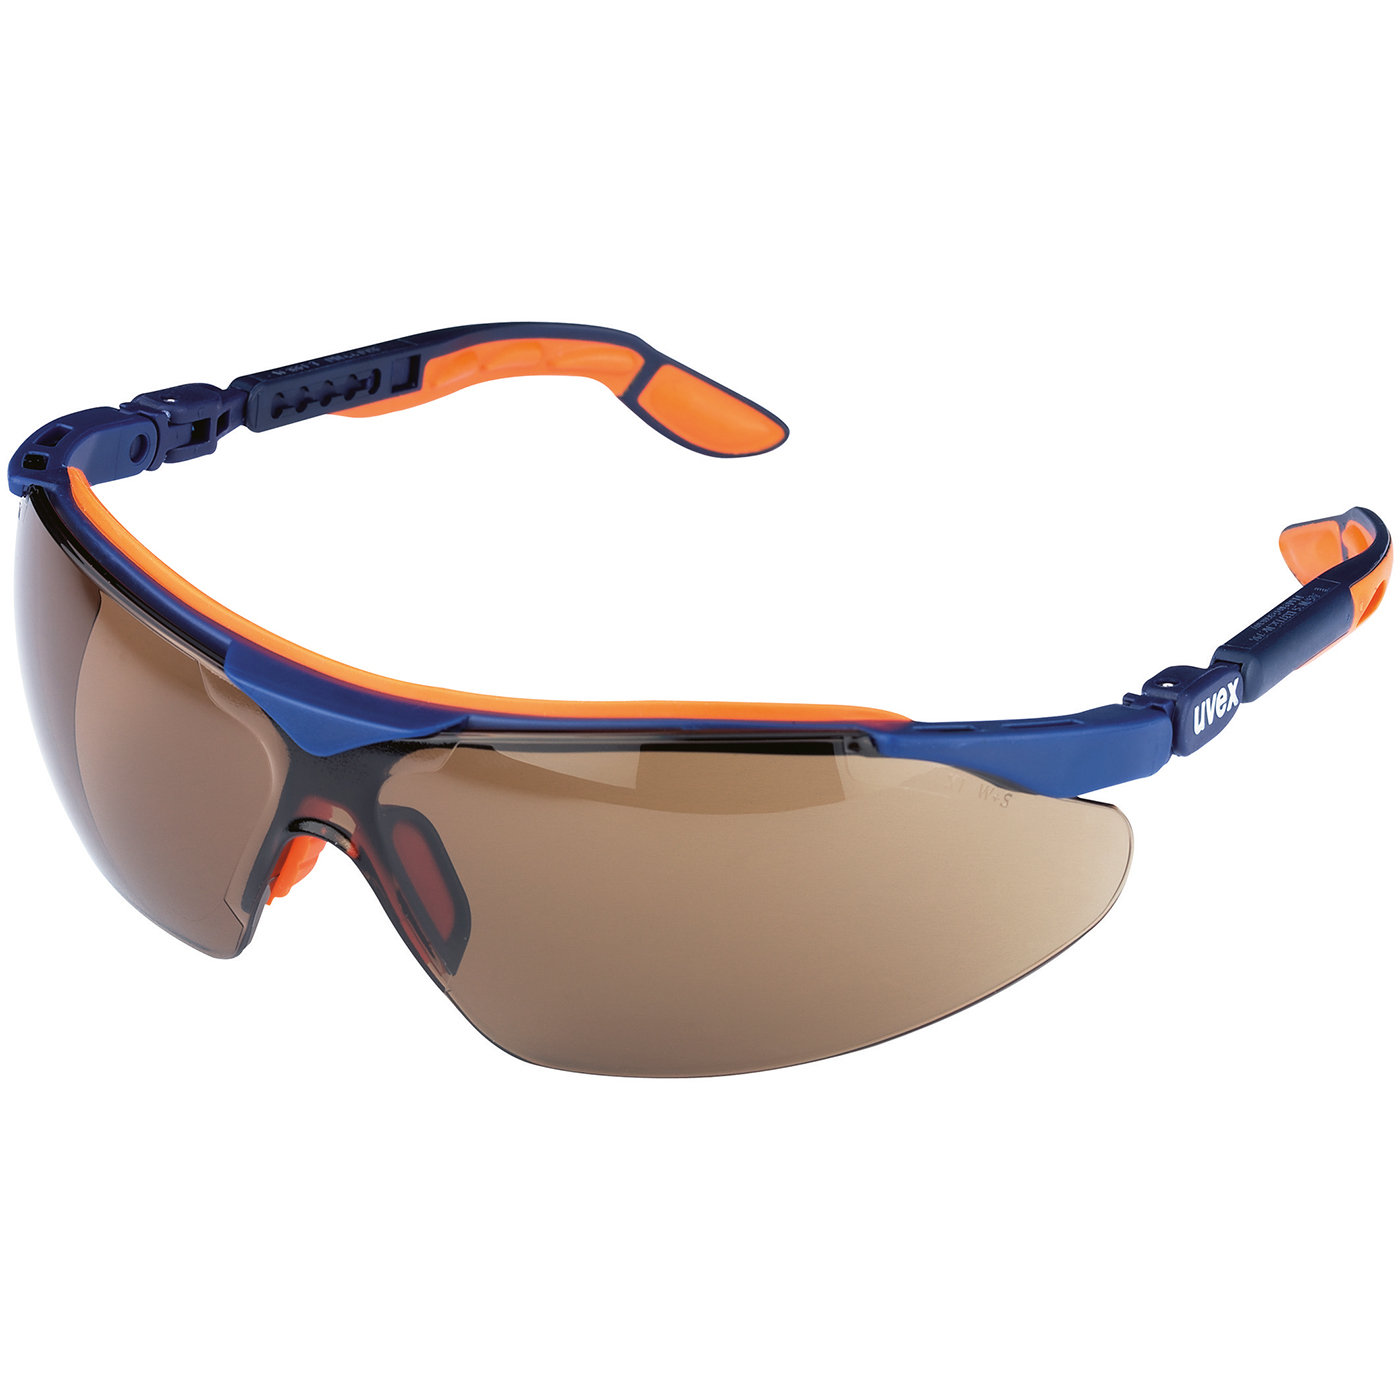 uvex iSpec Comfort Fit Schutzbrille,Scheibe braun,F. blau/orange - 1 Stück